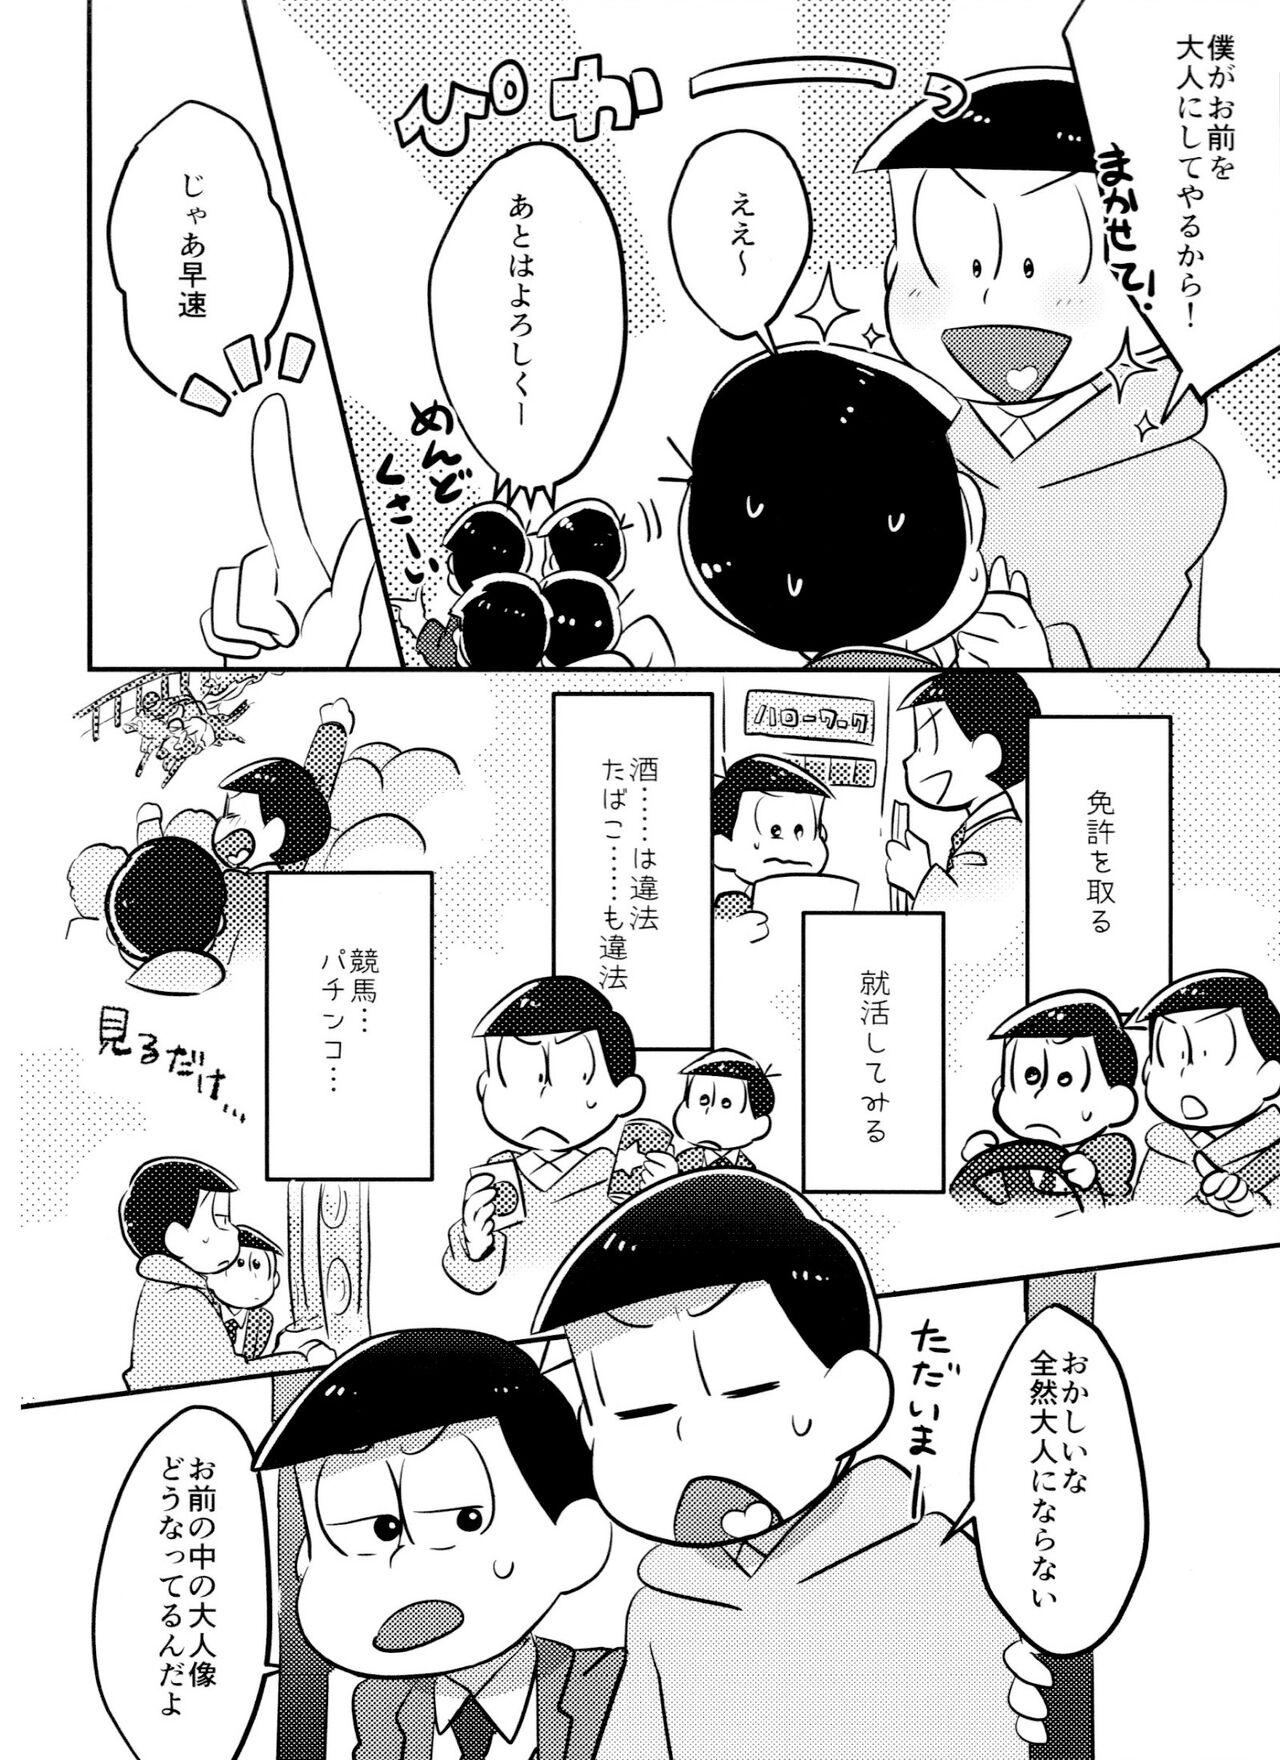 Vergon Kimi wa itsu kara otonana no!? - Osomatsu-san Cousin - Page 5